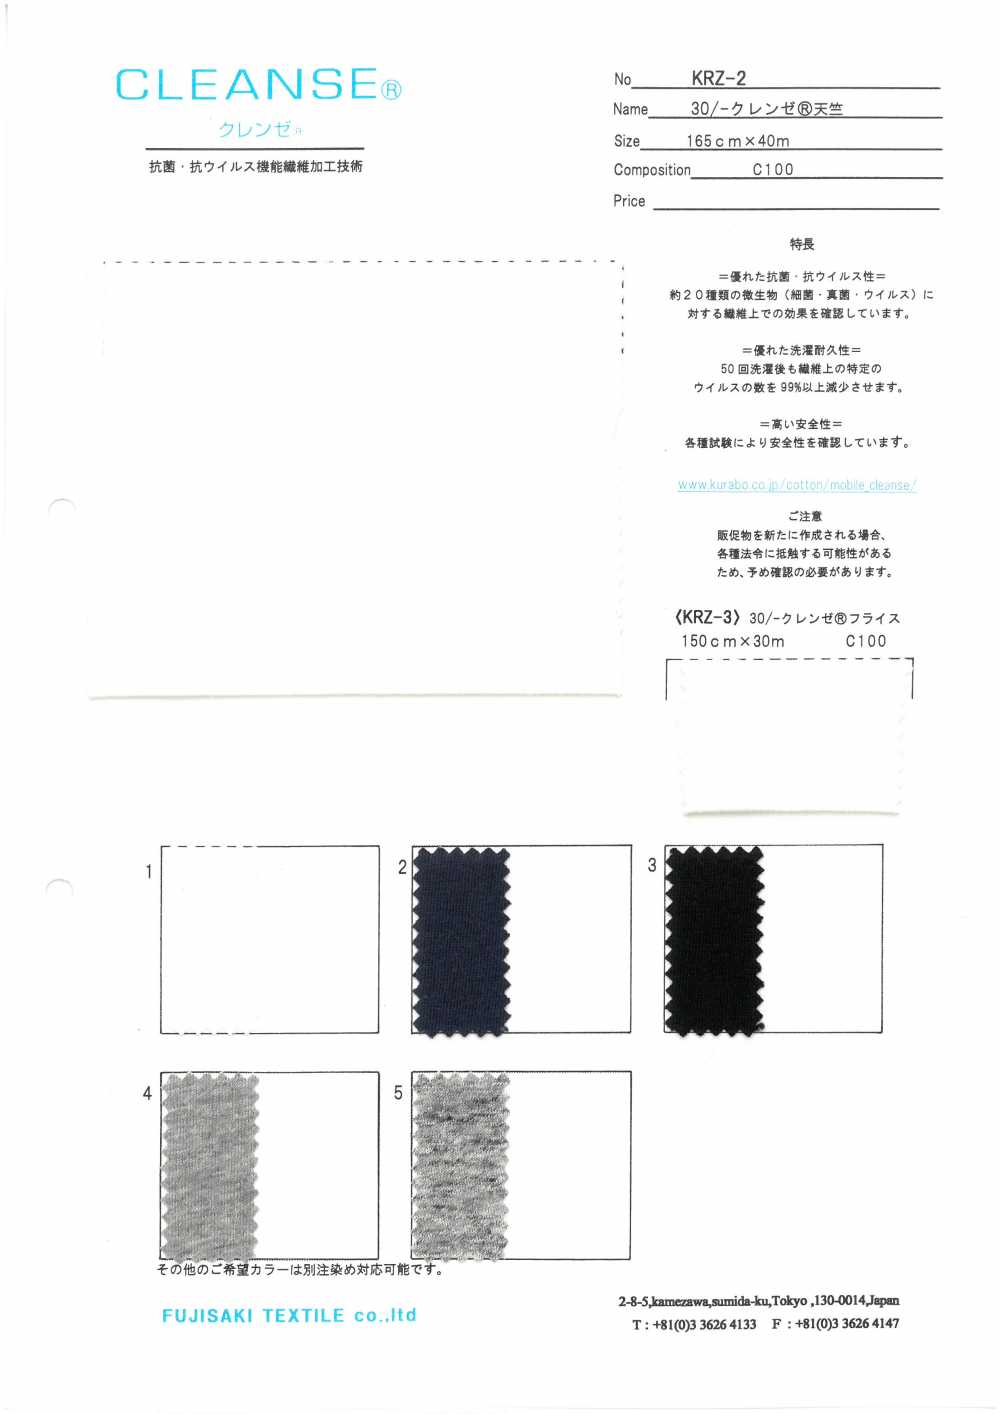 KRZ-2 30 / - CLEANSE& # Vải Cotton Tenjiku ; Fujisaki Textile